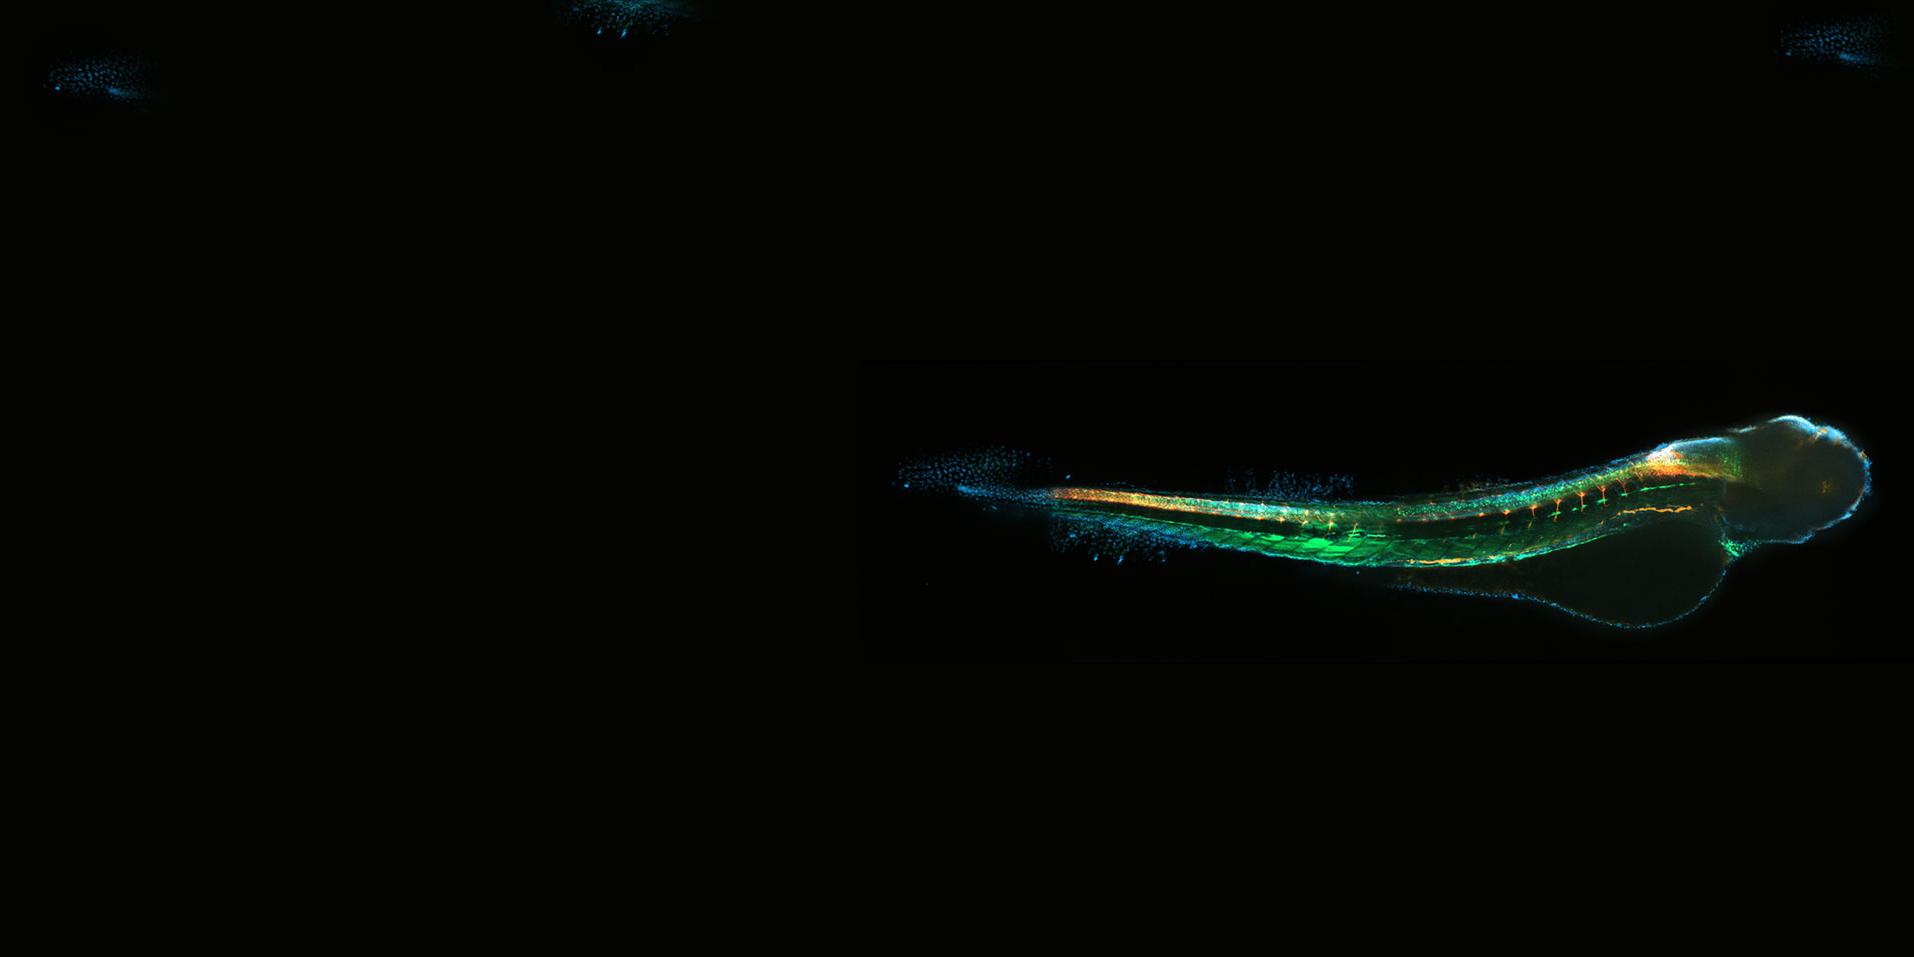 Transgenic zebrafish larva. Courtesy of H. Reuter, Leibniz-Institute on Aging – Fritz-Lipmann-Institut e.V. (FLI), Germany.